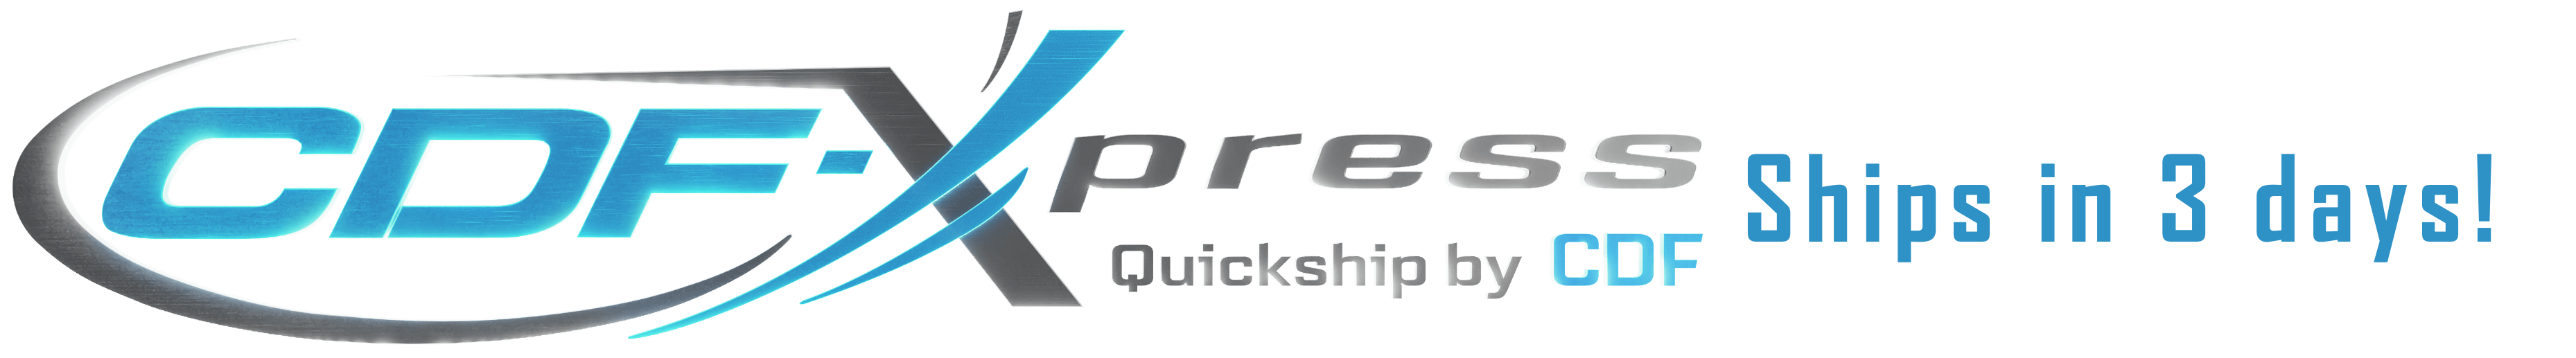 cdf xpress ships in 3 days logo